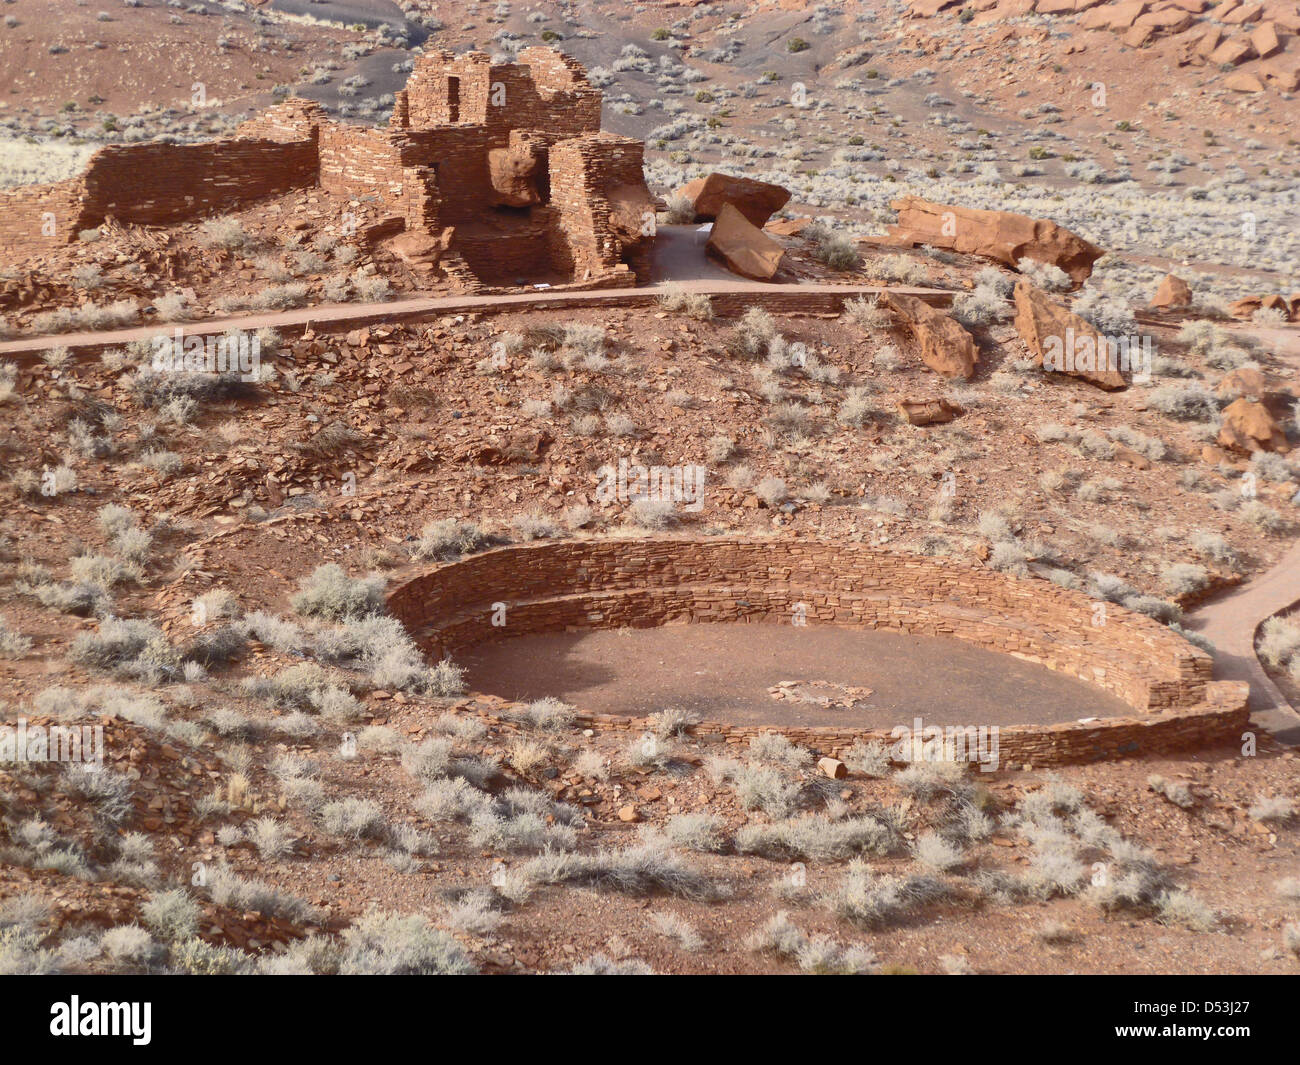 Wupatki National Monument. Ruines d'Adobe les habitations des Indiens Pueblo près de Flagstaff, Arizona, USA Banque D'Images